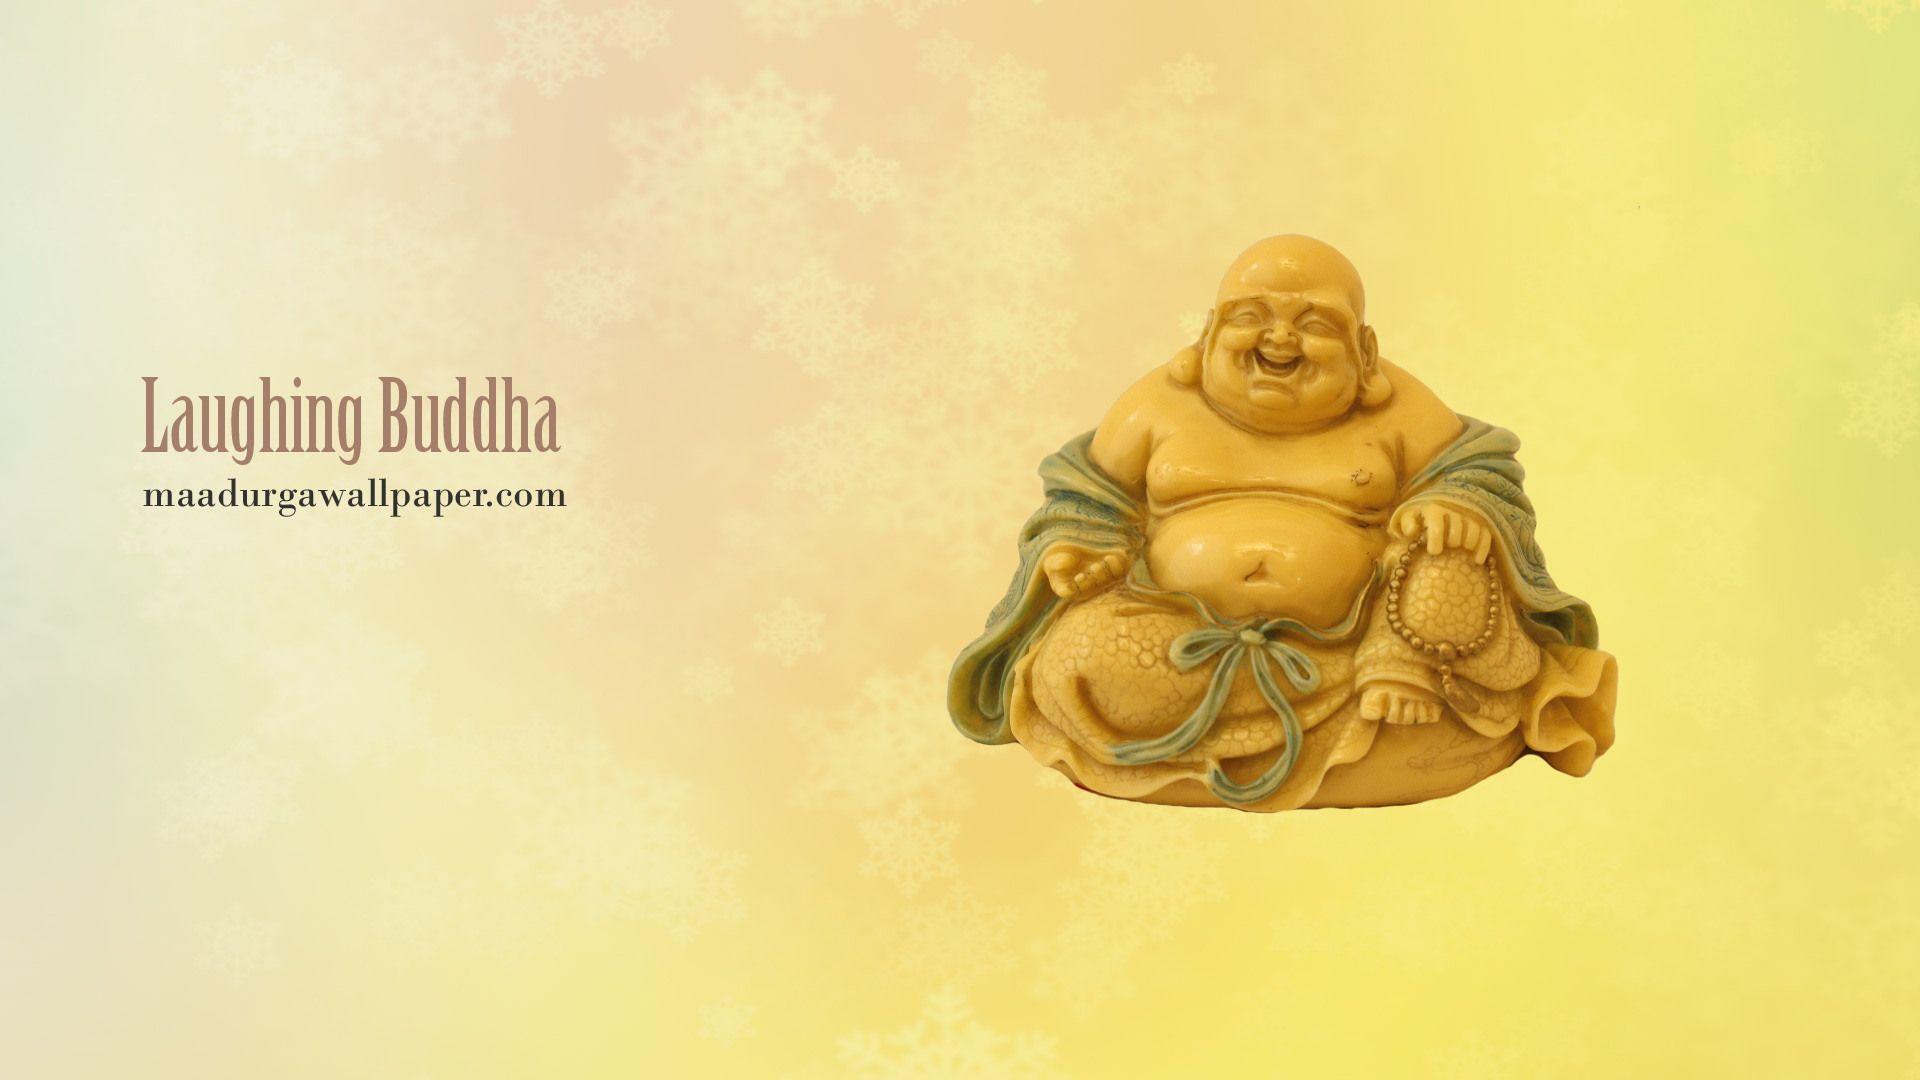 Laughing Buddha Image download free